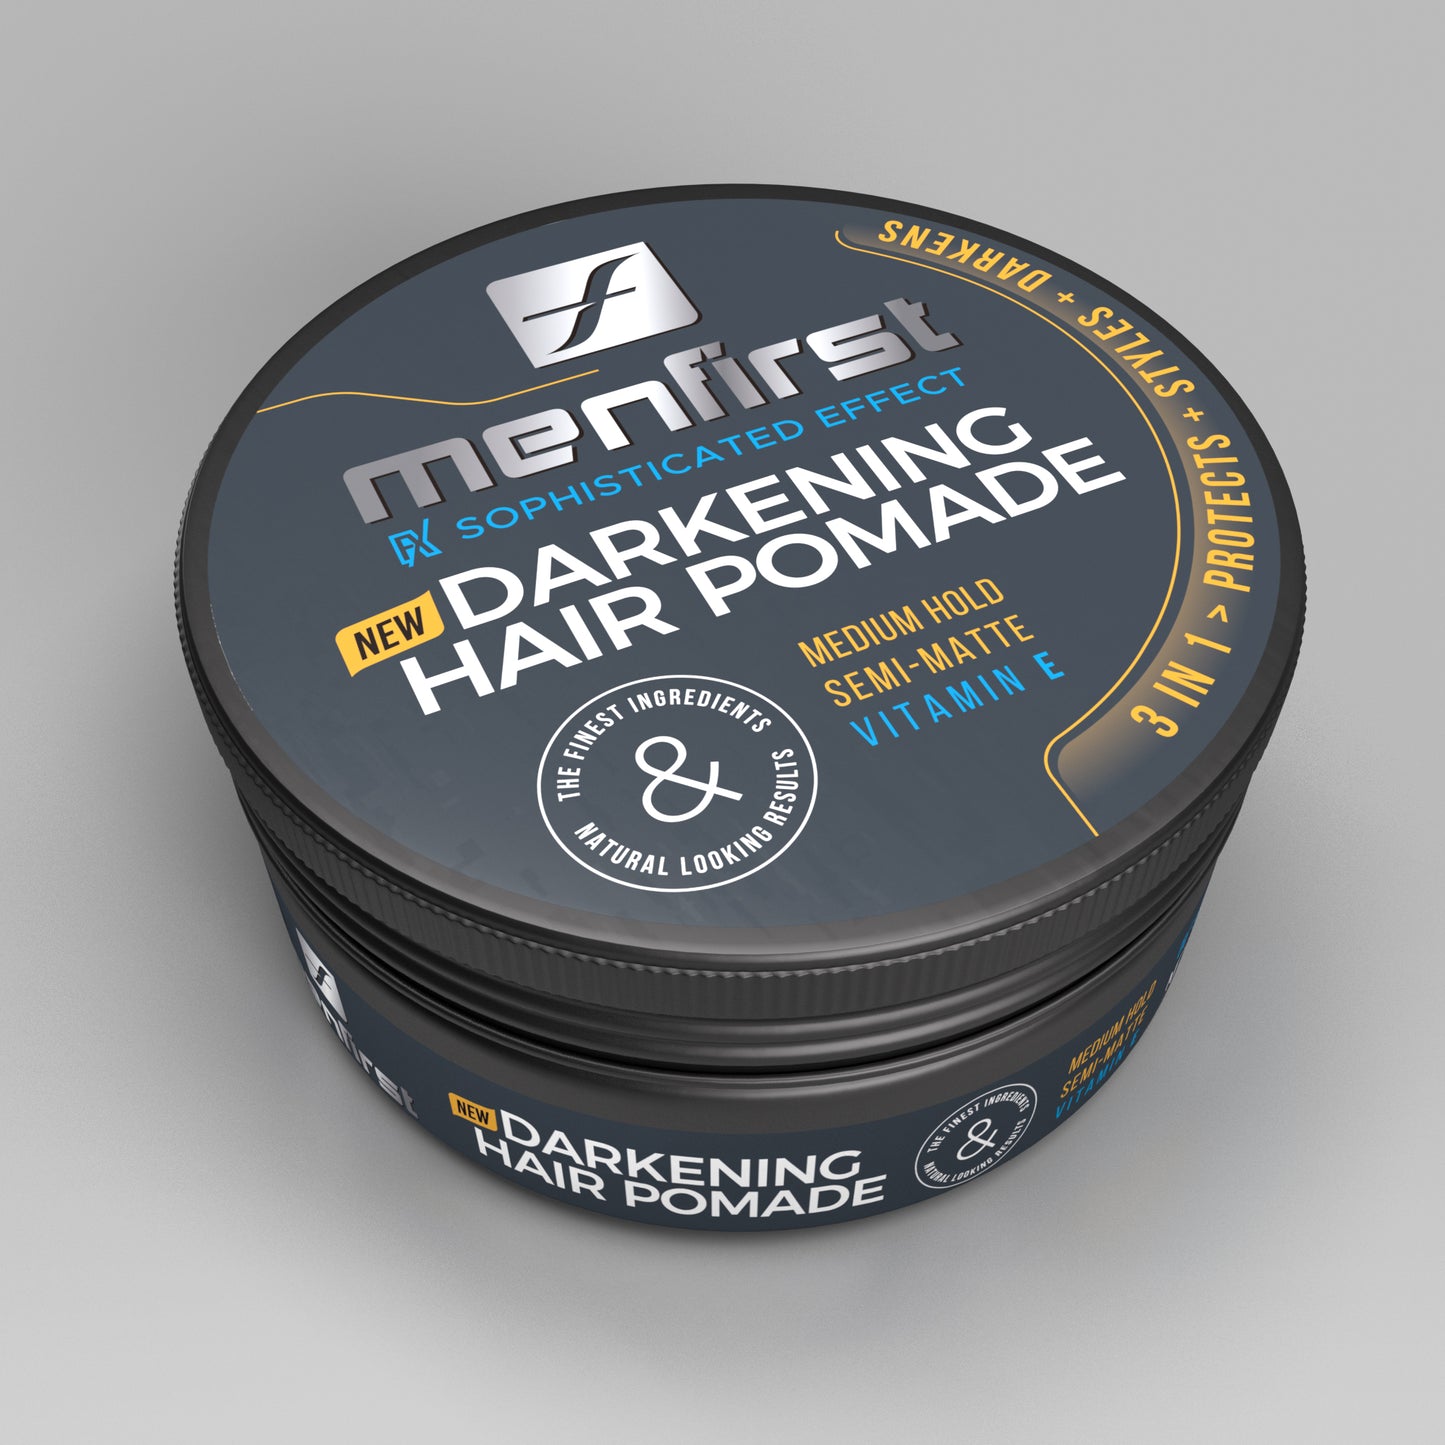 Menfirst - Darkening Hair Pomade for Men - 3 Pack